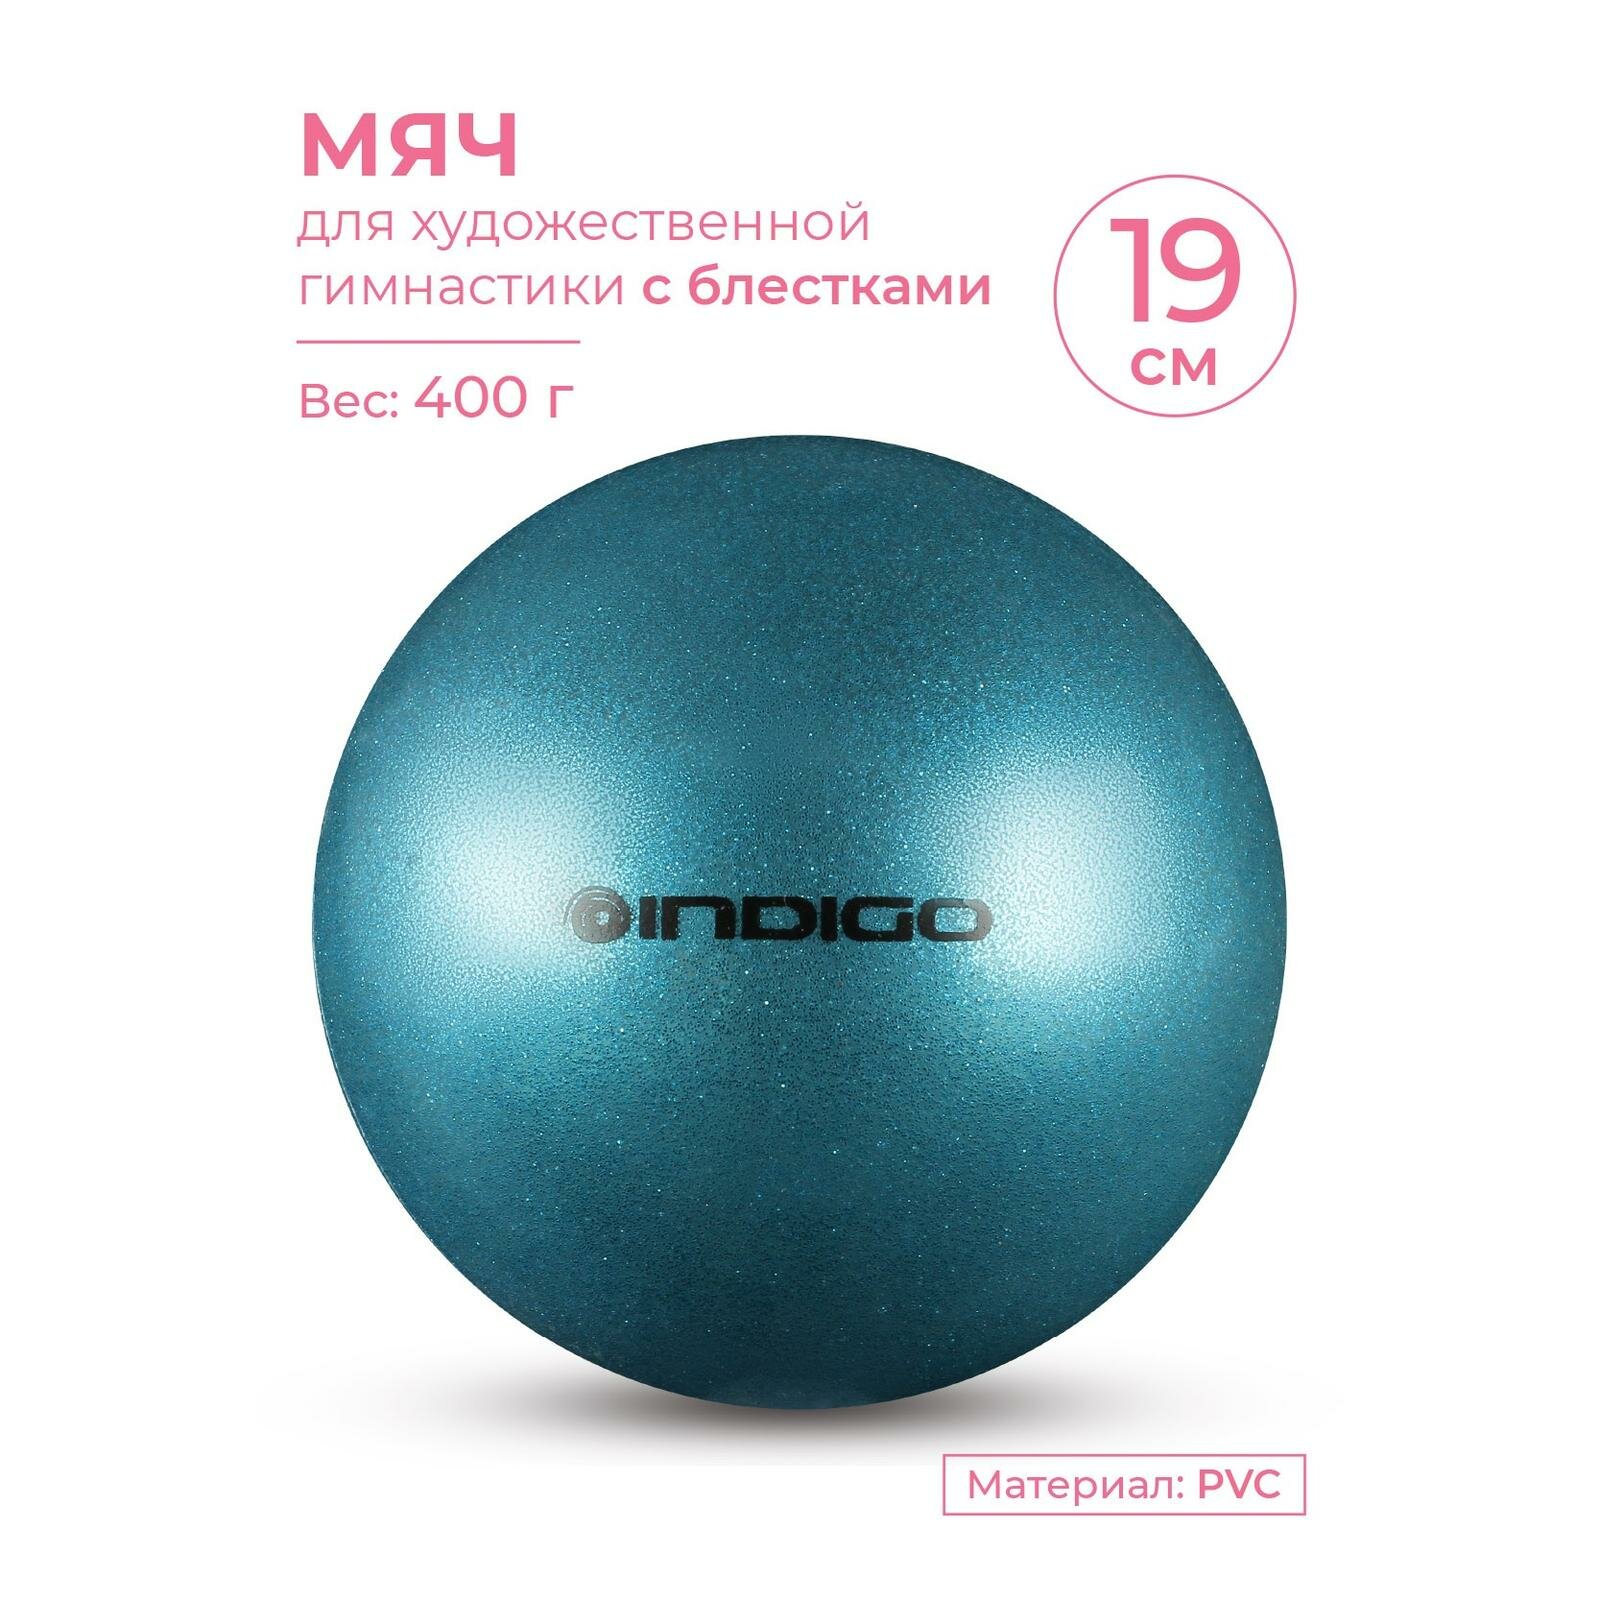 Мяч для художественной гимнастики INDIGO металлик 400 г IN118 Синий с блестками 19 см